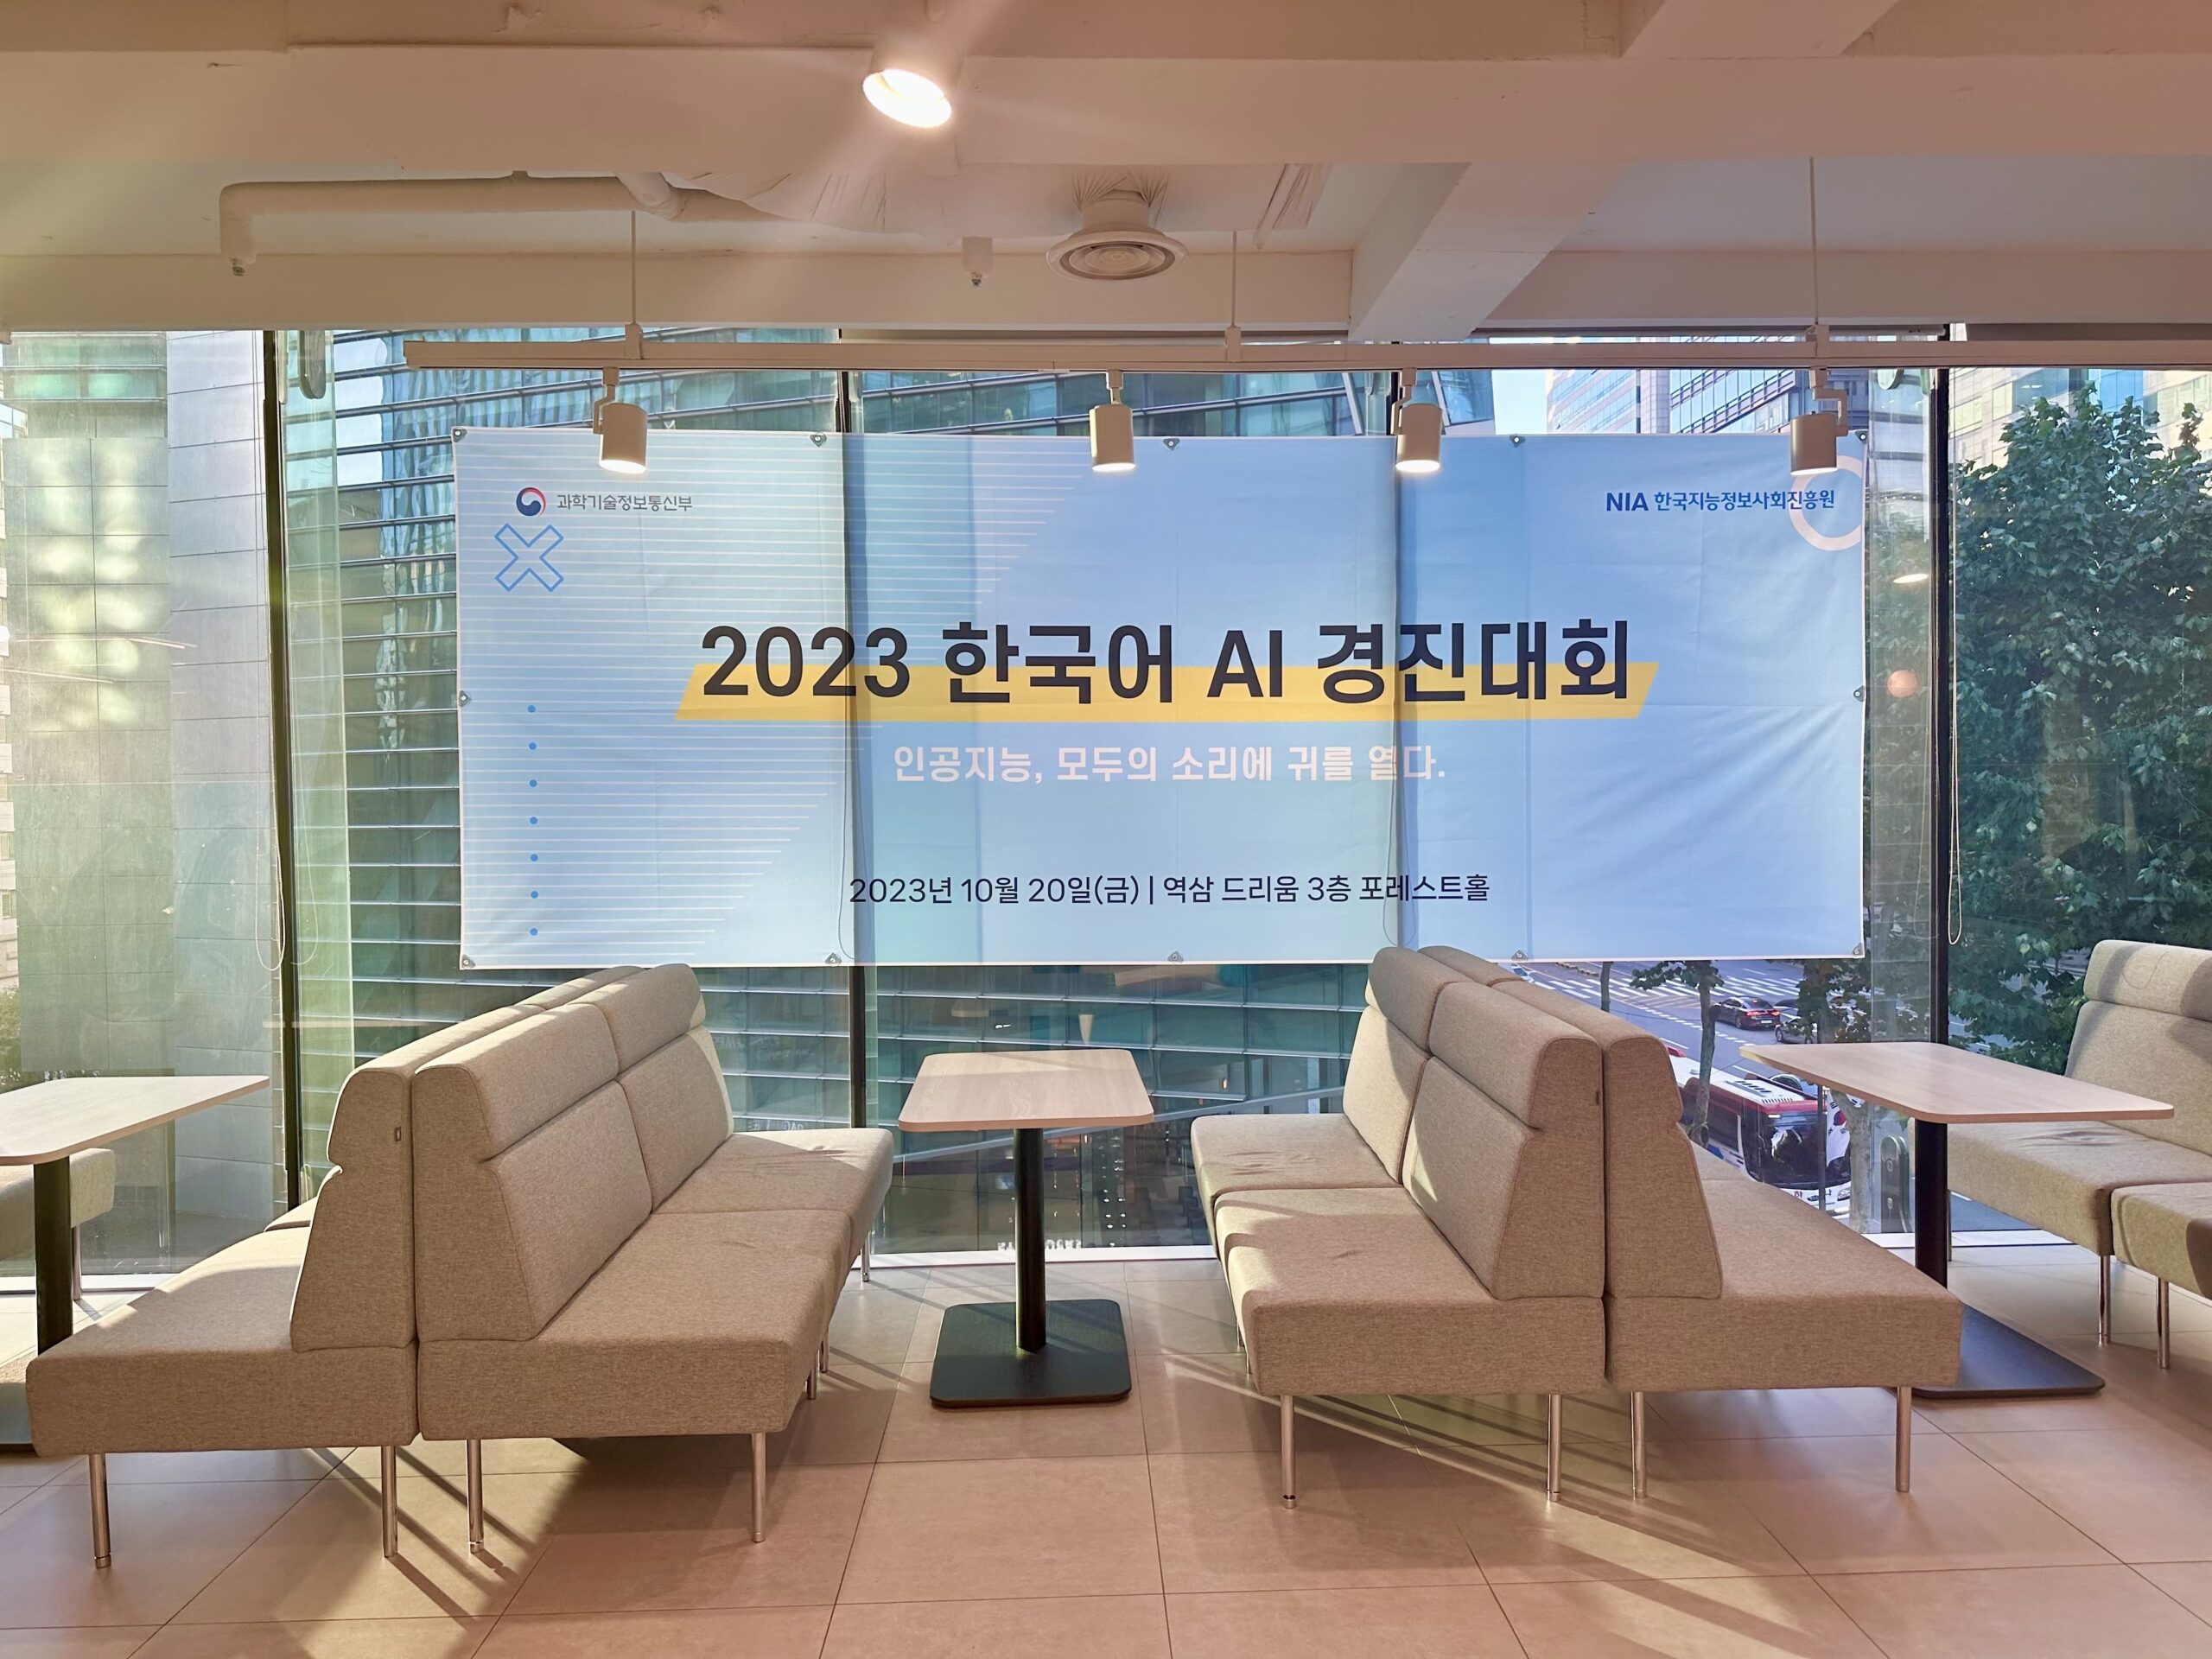 (포레스트홀 전체대관) (주)어반데이터랩 '청소년부 해커톤_2023 한국어 AI 경진대회'